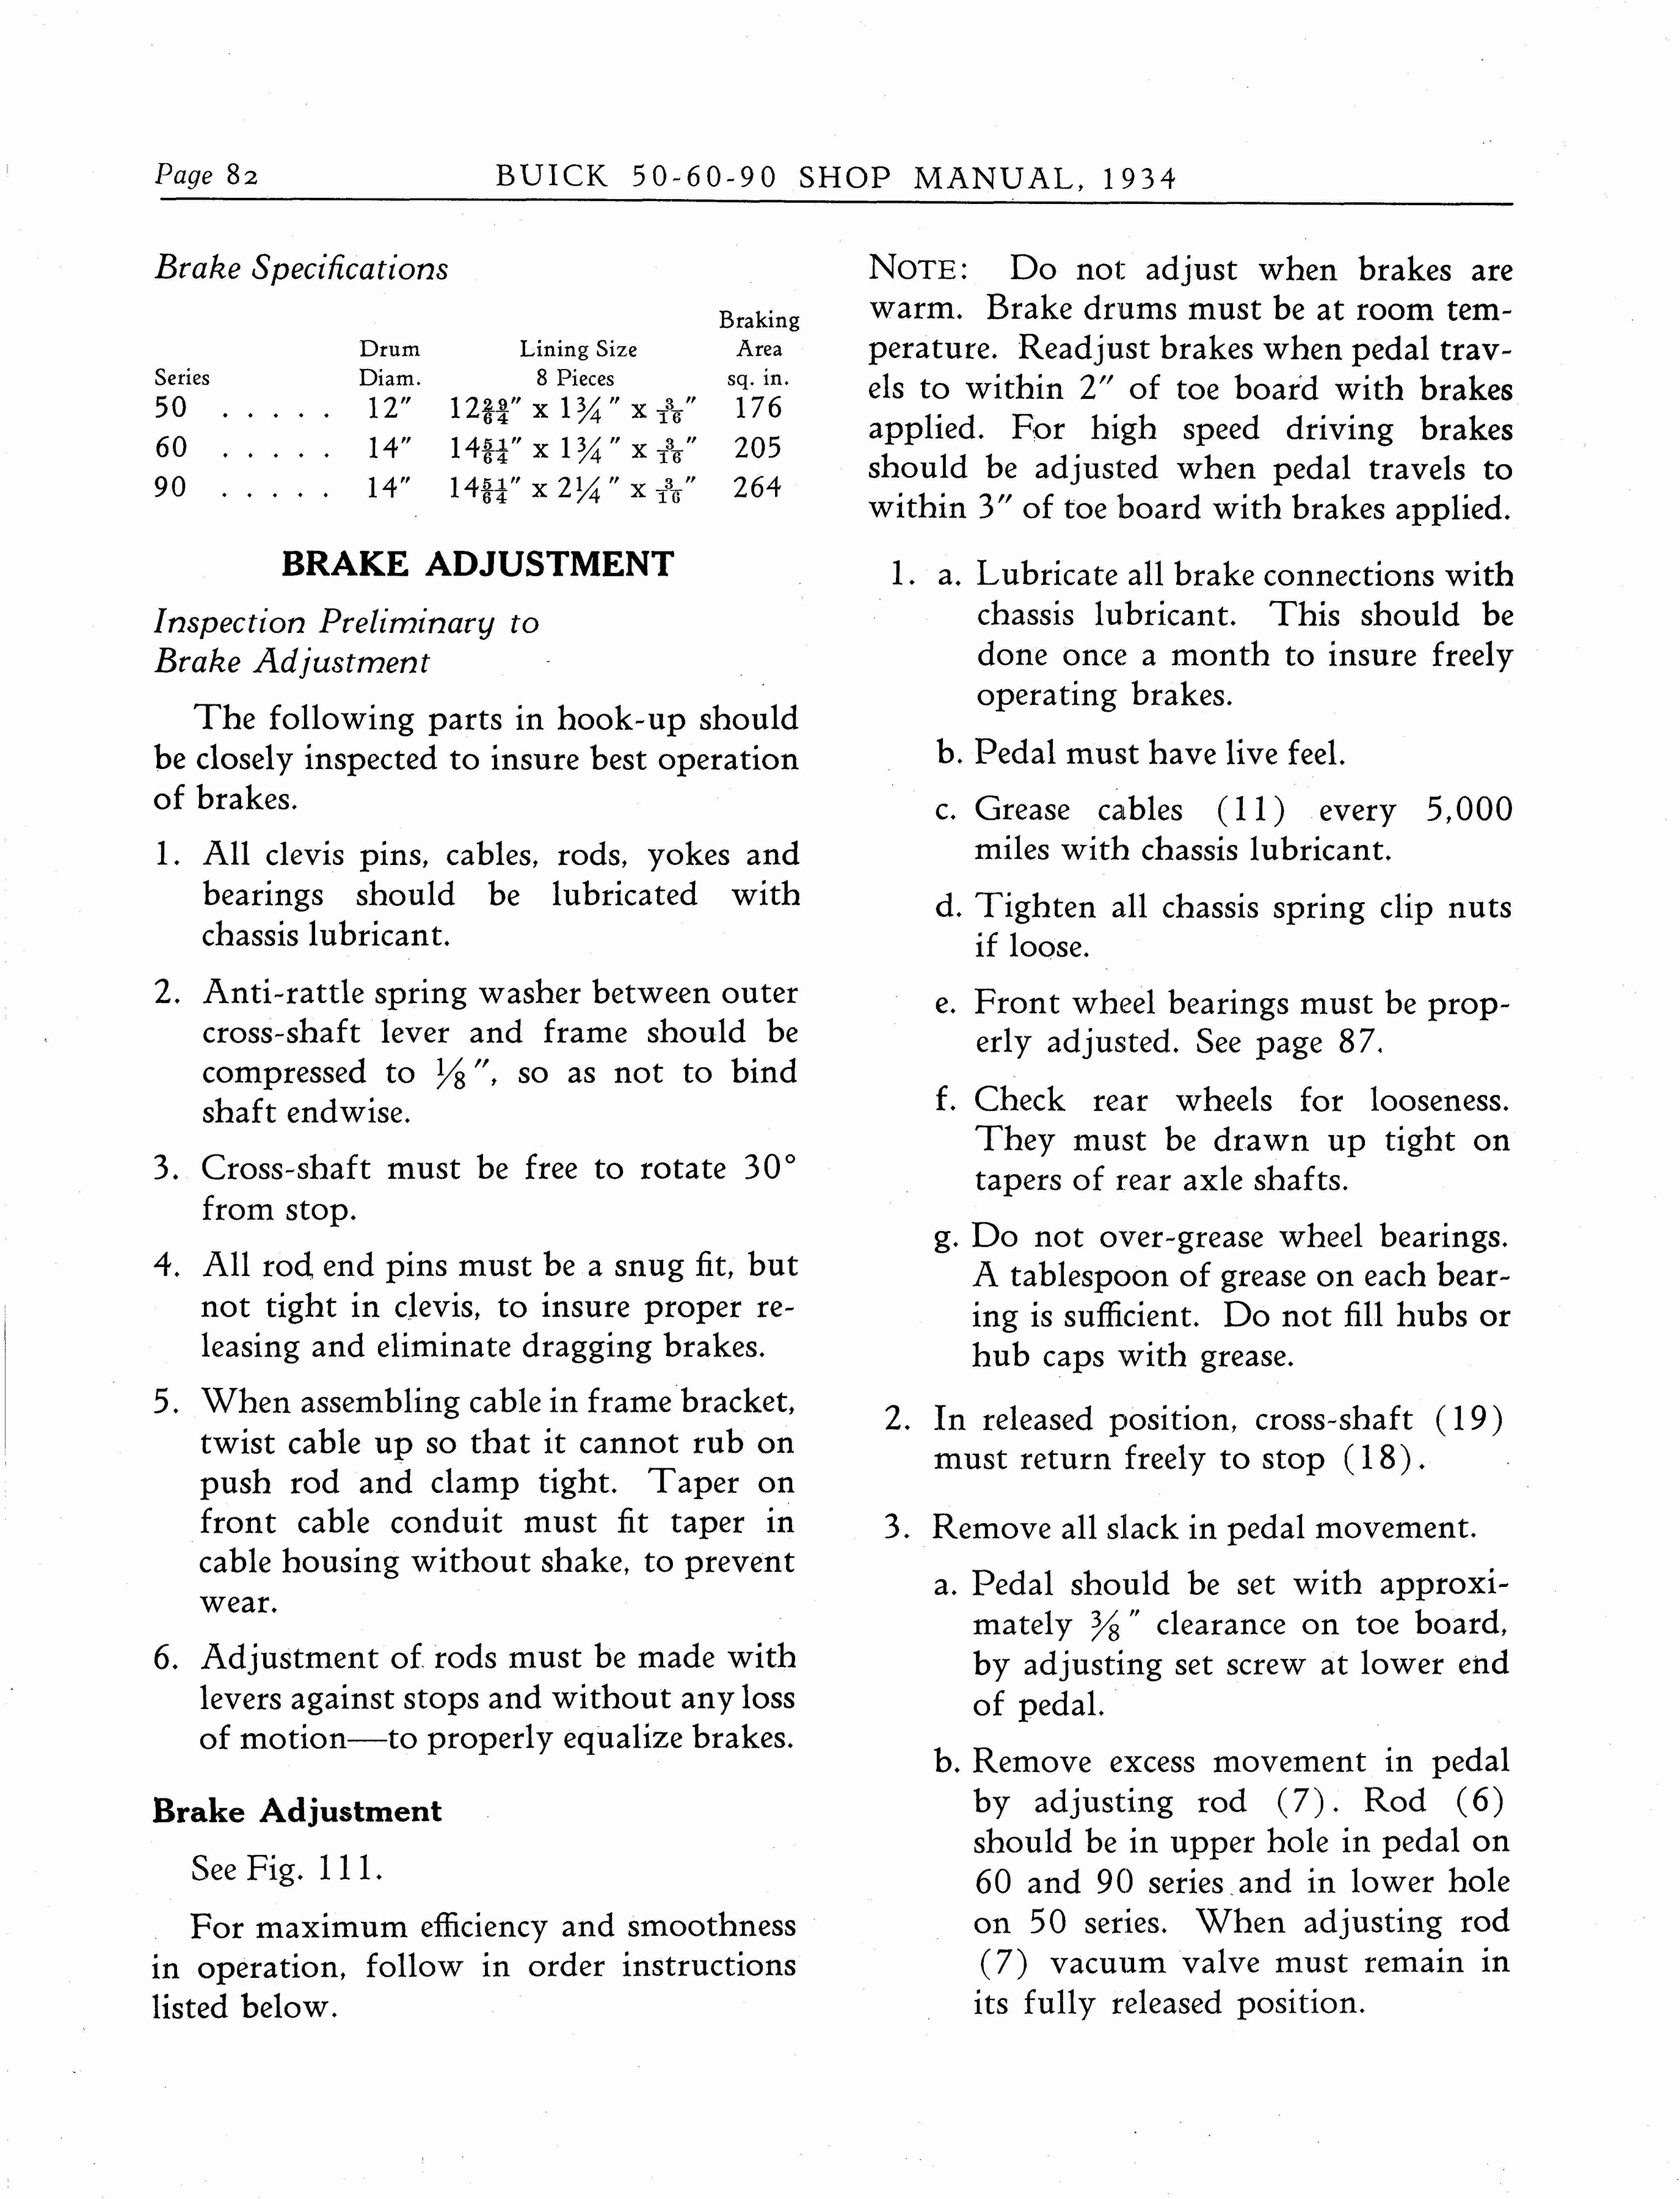 n_1934 Buick Series 50-60-90 Shop Manual_Page_083.jpg